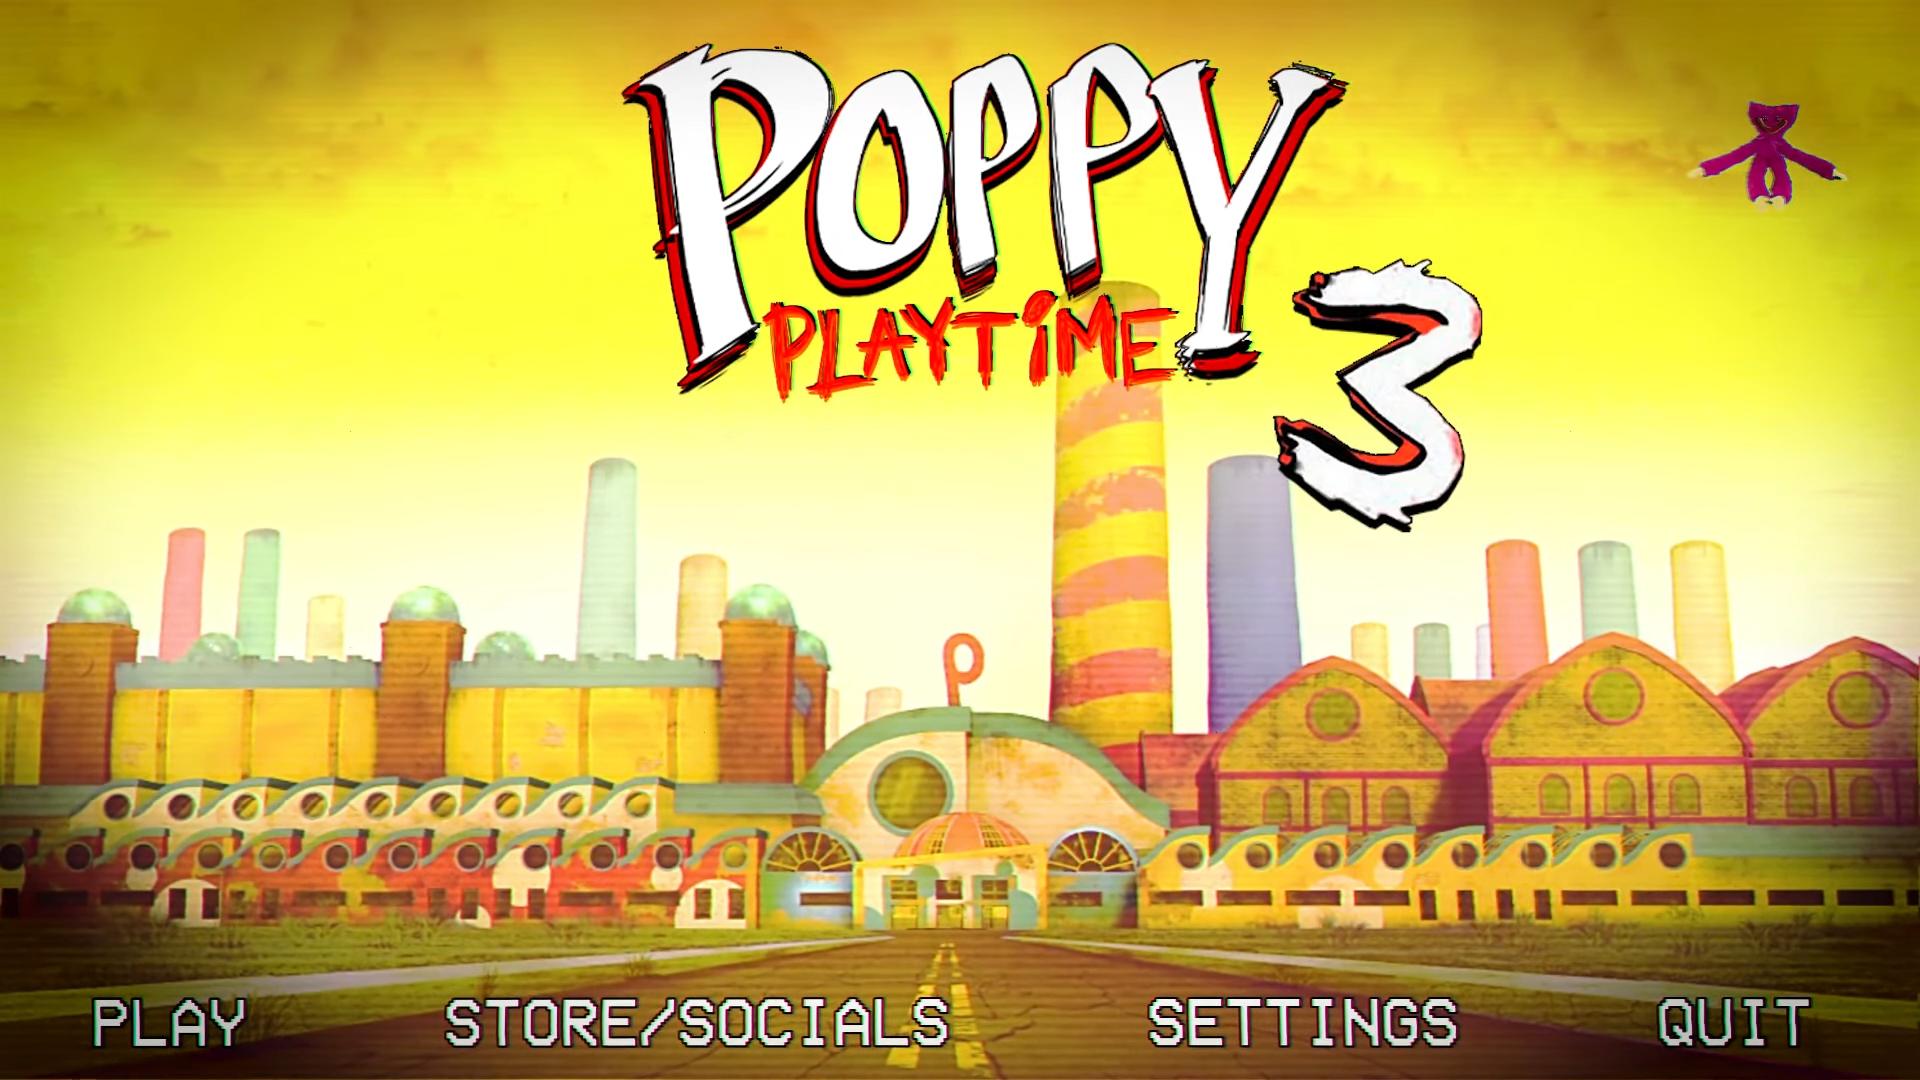 Меню поппи плейтайм 3. Poppy Playtime игра. Завод Poppy Play time. Фабрика из игры Poppy Playtime. Poppy Playtime главное меню.